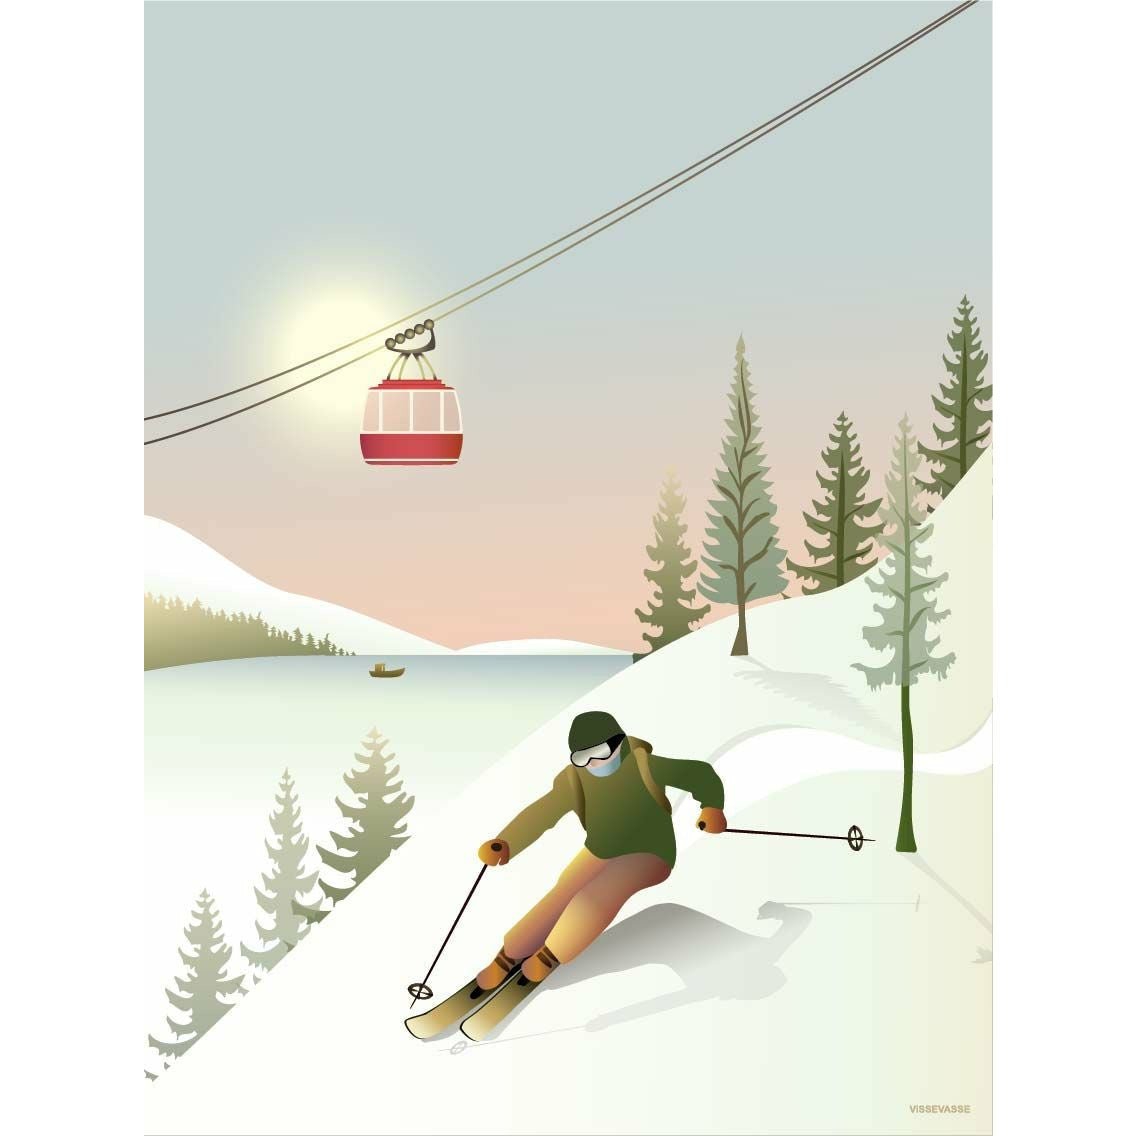 Vissevasse Offpiste Skiing Plakat, 30x40 cm